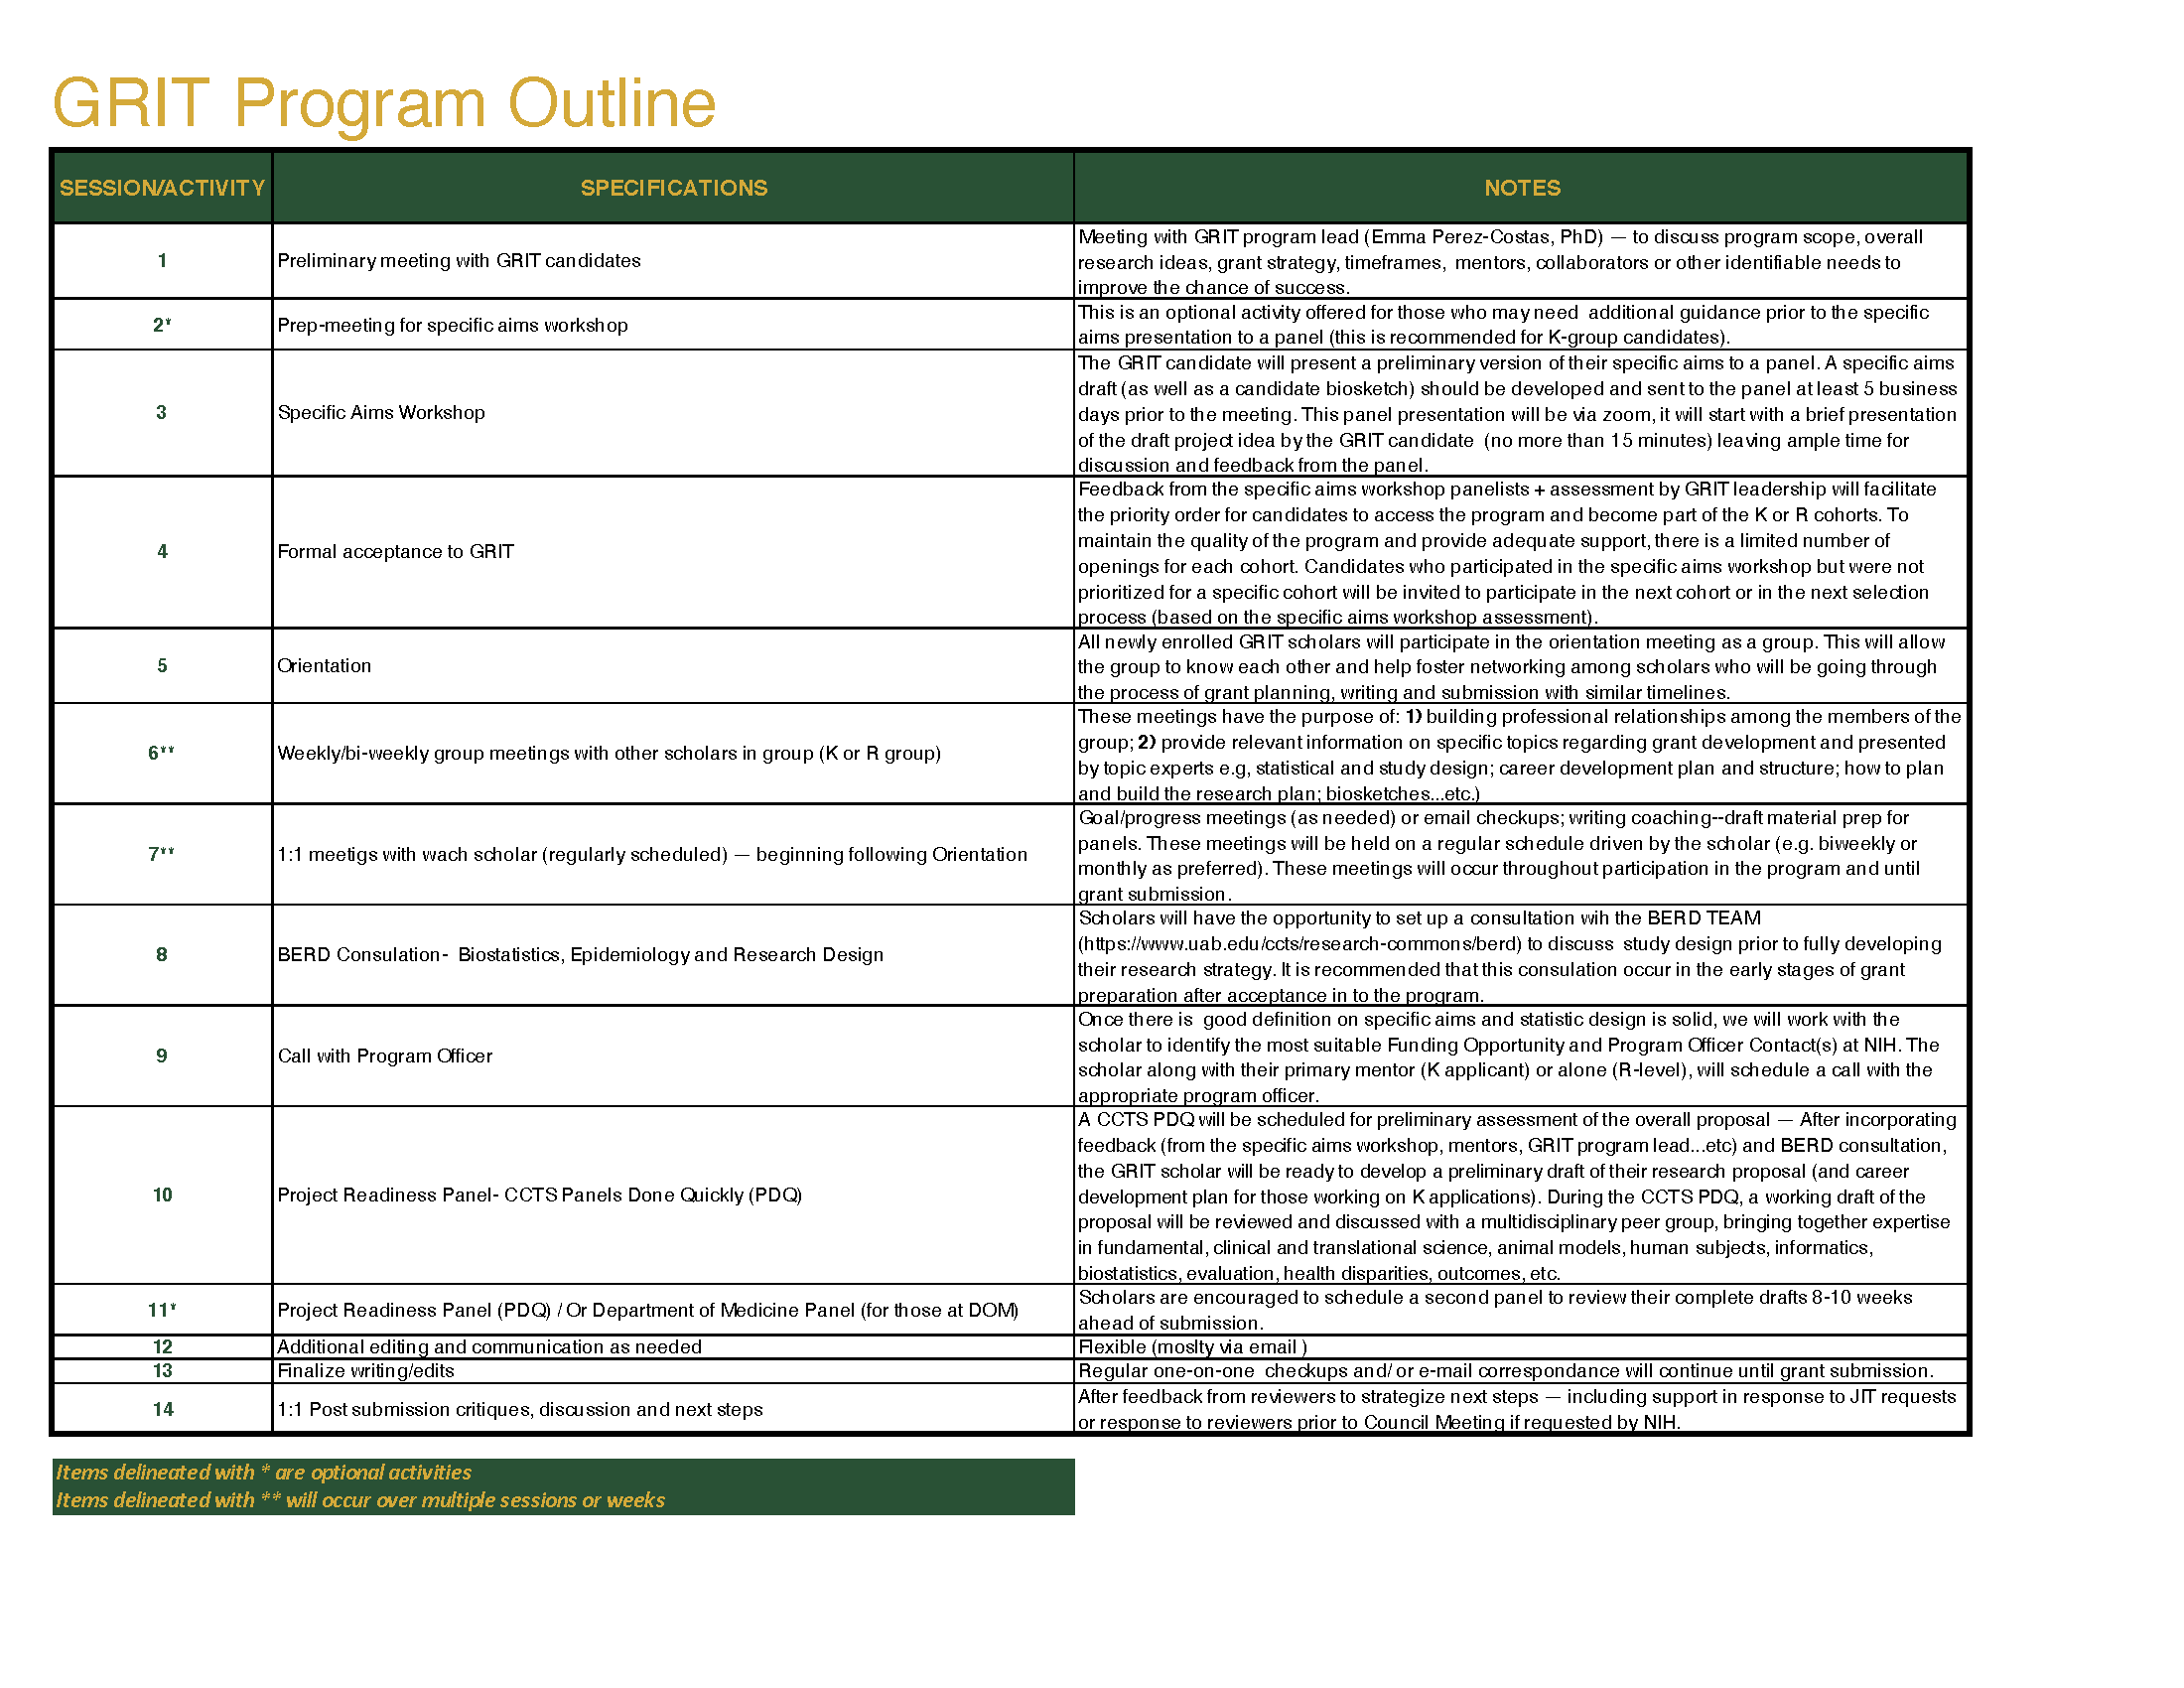 GRIT Program Outline Fall 2020